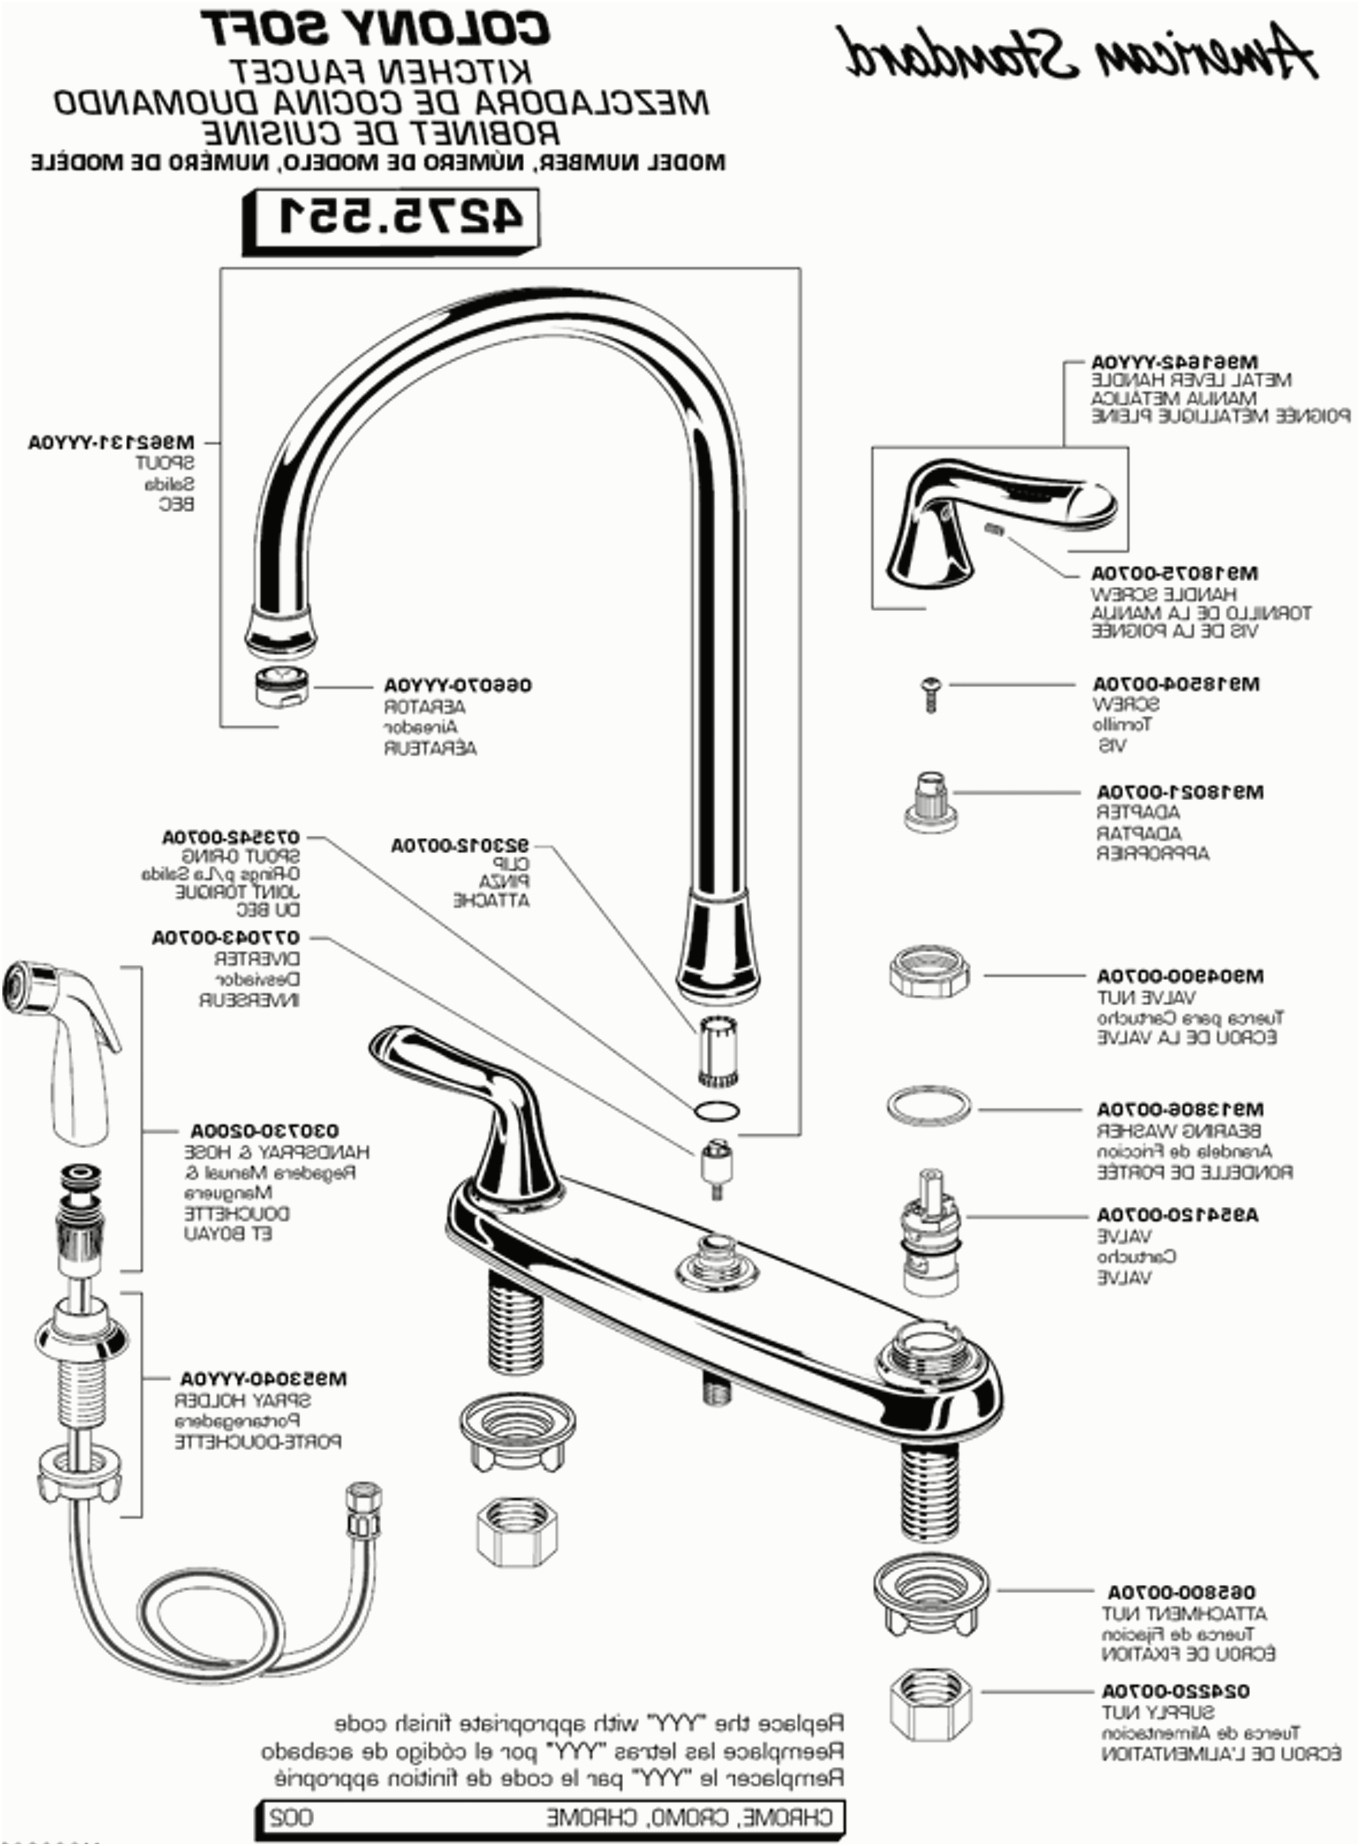 Grohe Ladylux Plus Parts Diagram Faucet Grohe Ladylux Faucets Lowes Faucet Repair Plus Parts Of Grohe Ladylux Plus Parts Diagram